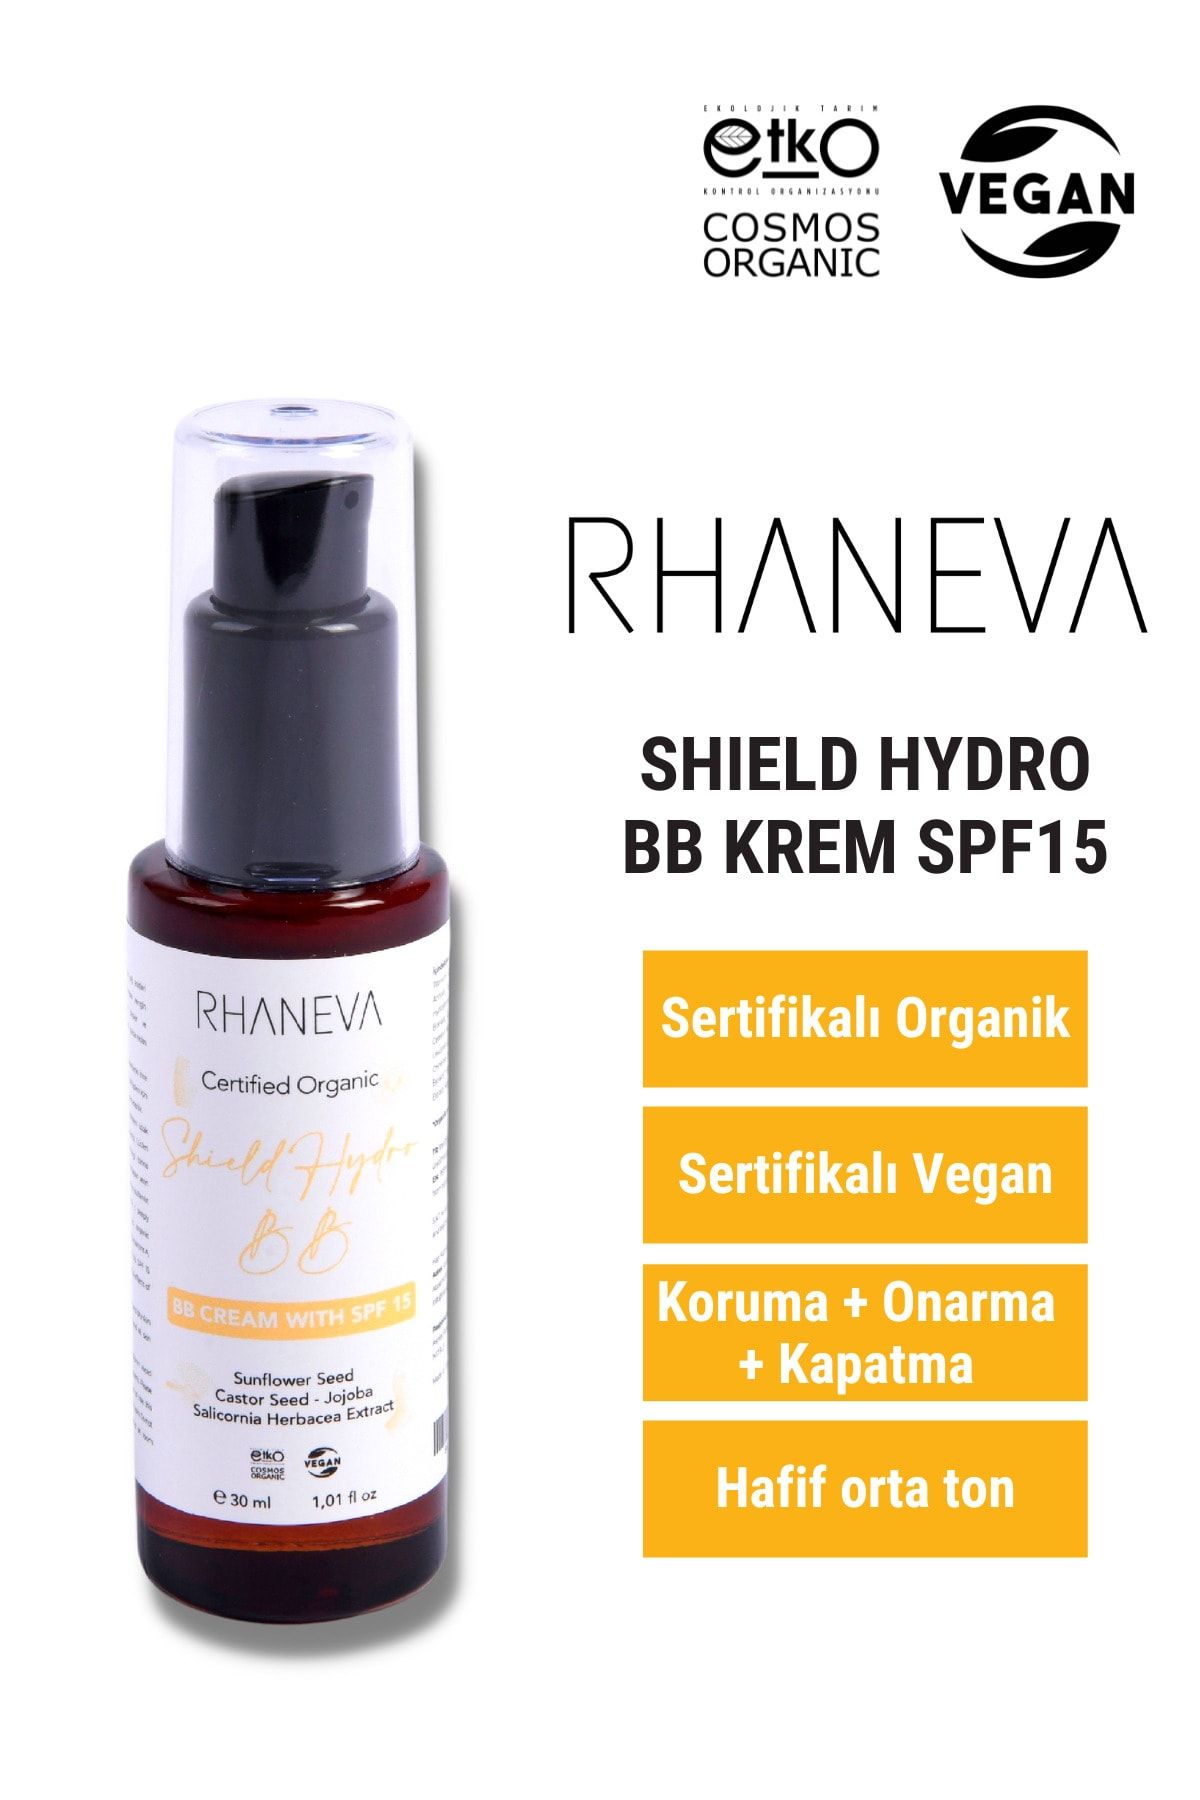 RHANEVA Shield Hydro Bb Krem Spf 15, Organik Ve Vegan Sertifikalı, 30 Ml